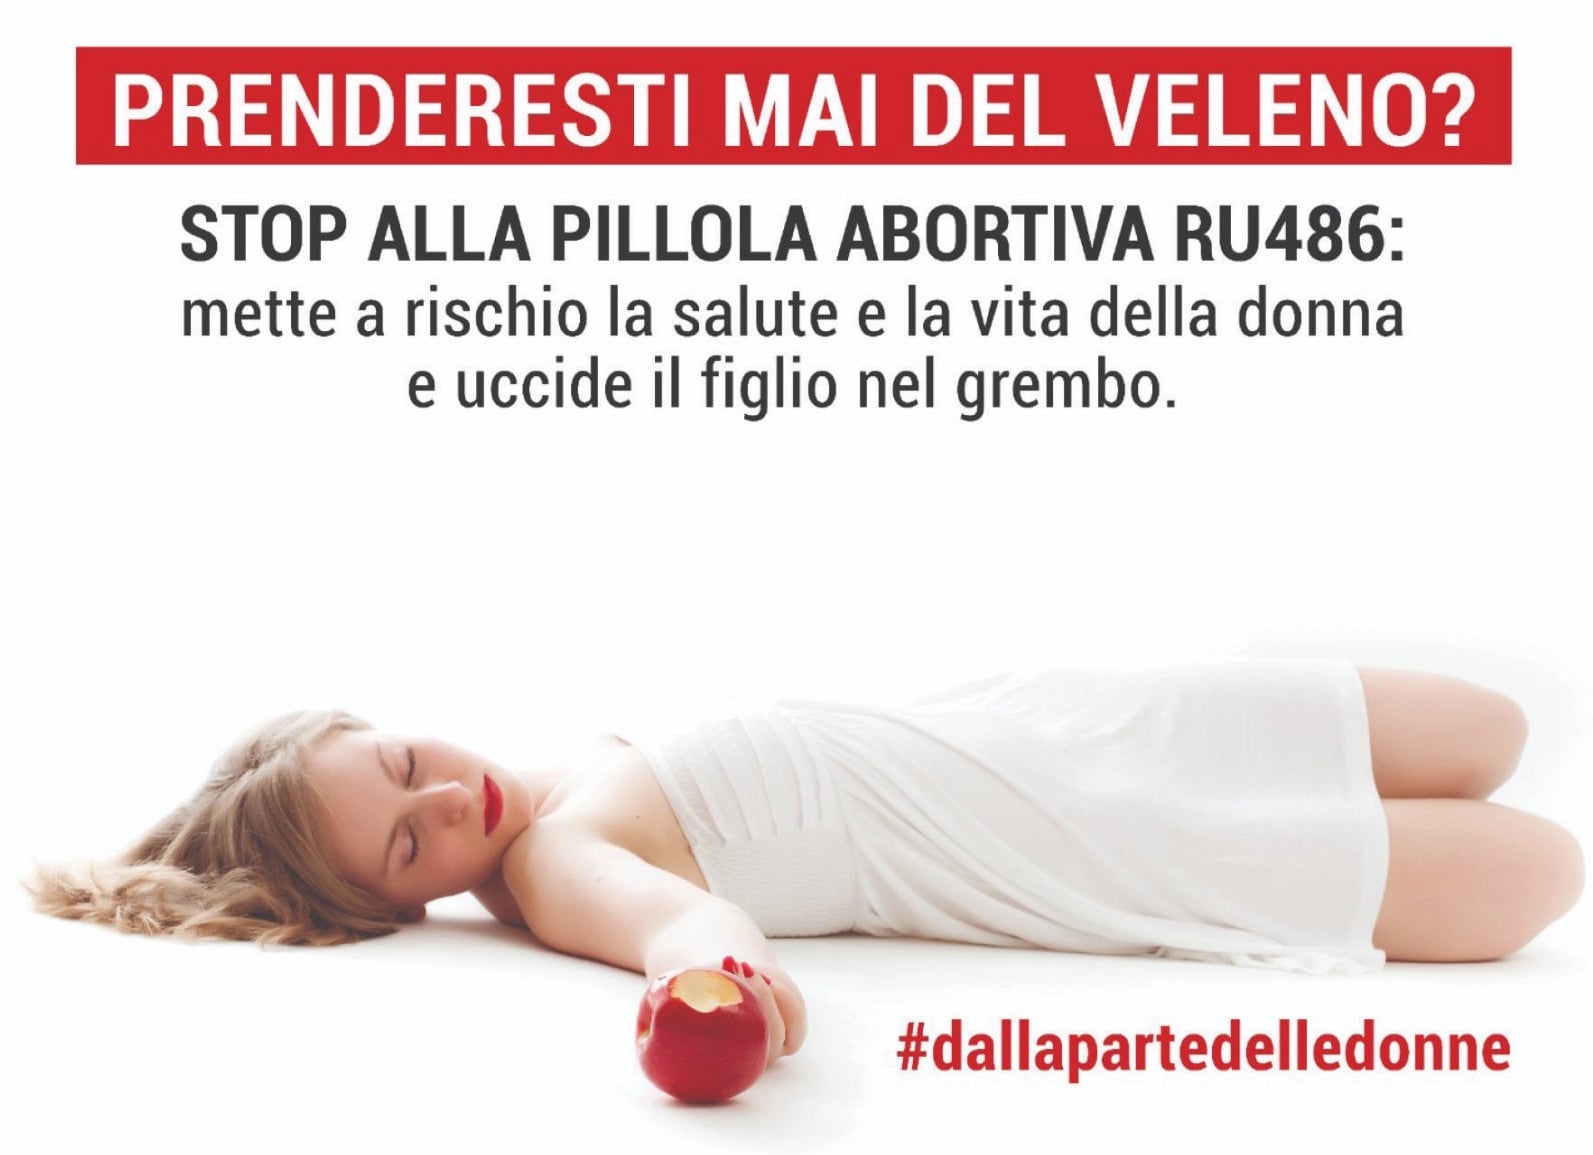 “Prenderesti mai del veleno?” – la campagna pro-vita contro la pillola abortiva